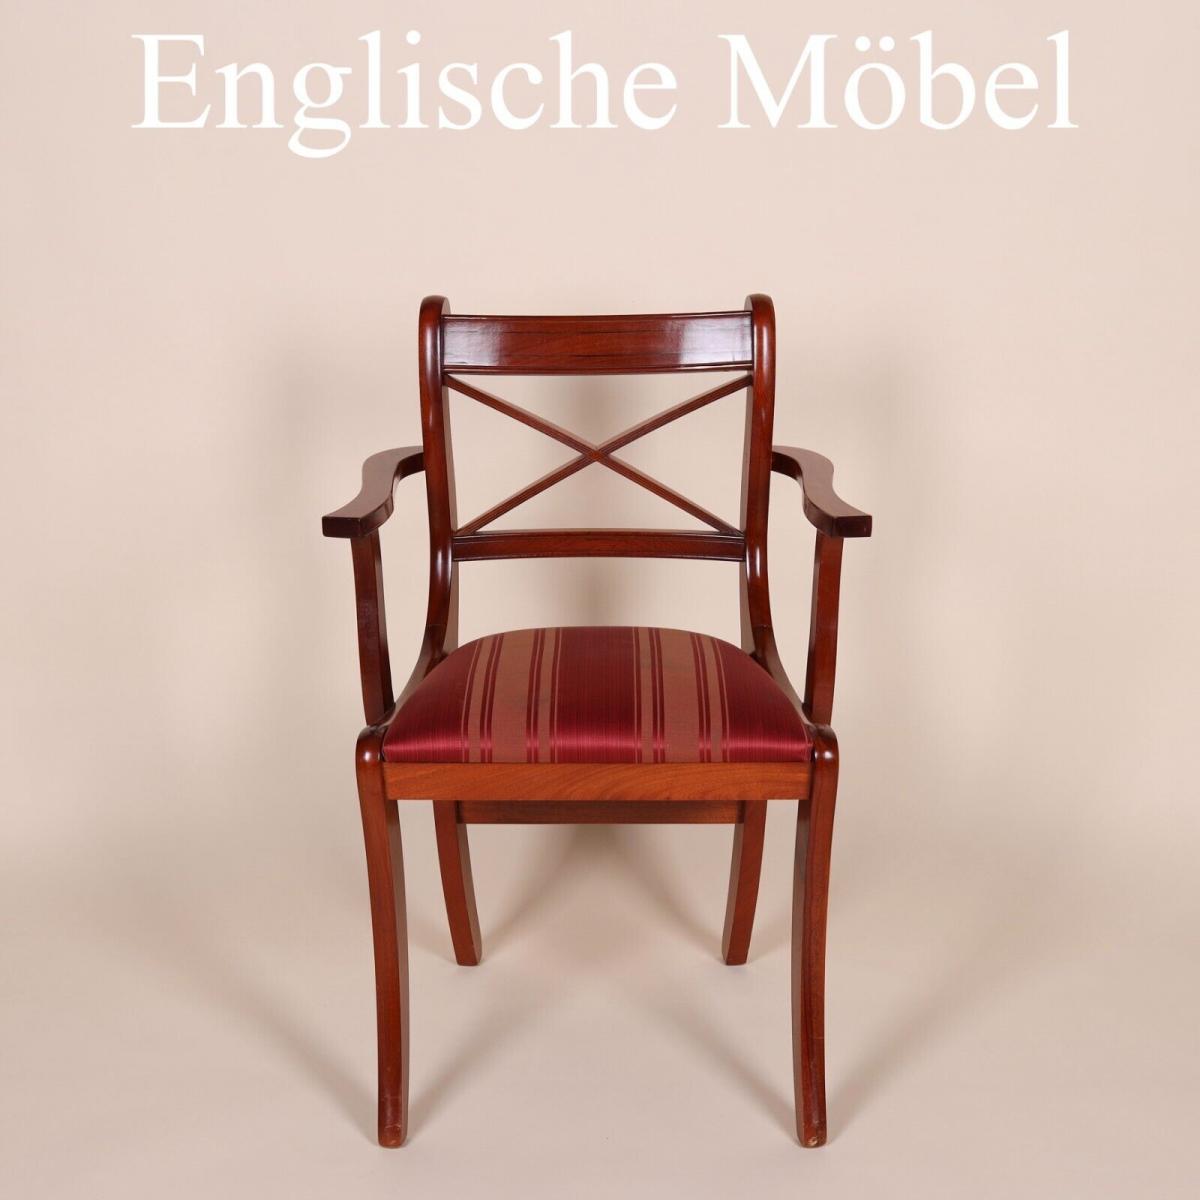 Englische Möbel original Esszimmer Esstisch Stuhl Stühle Cross Stick Armlehne UK